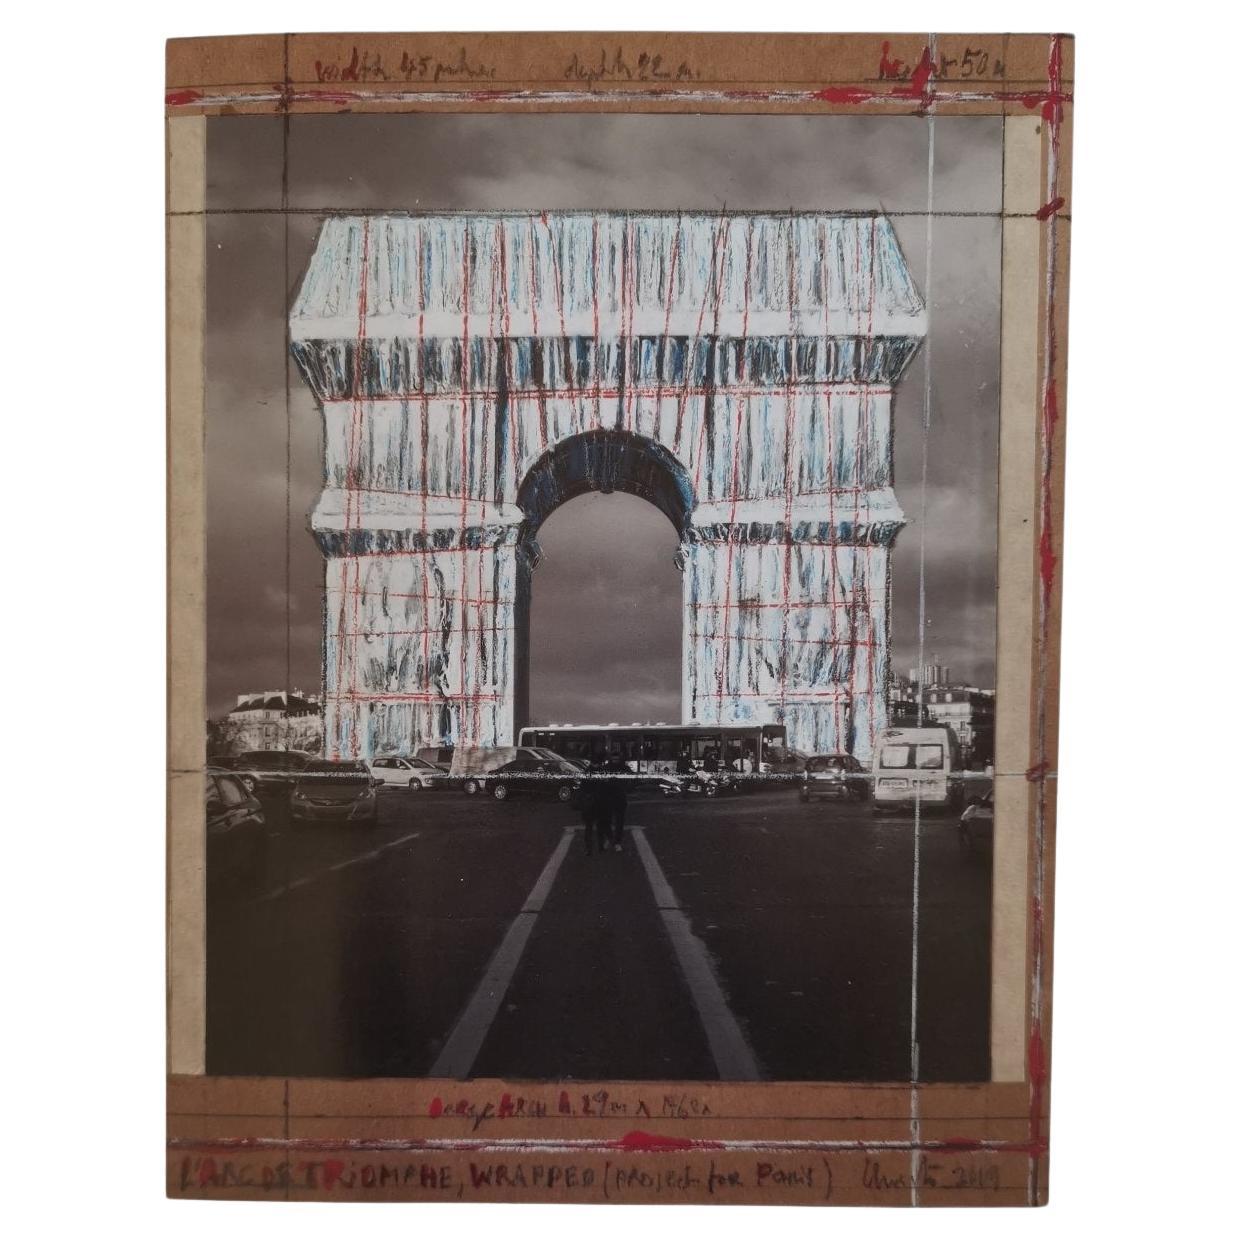 Impression de L'Arc de Triomphe projet emballé signé par l'artiste Christo Javacheff .
Feuille : 45 x 35 cm
ÉTATS-UNIS 2019.